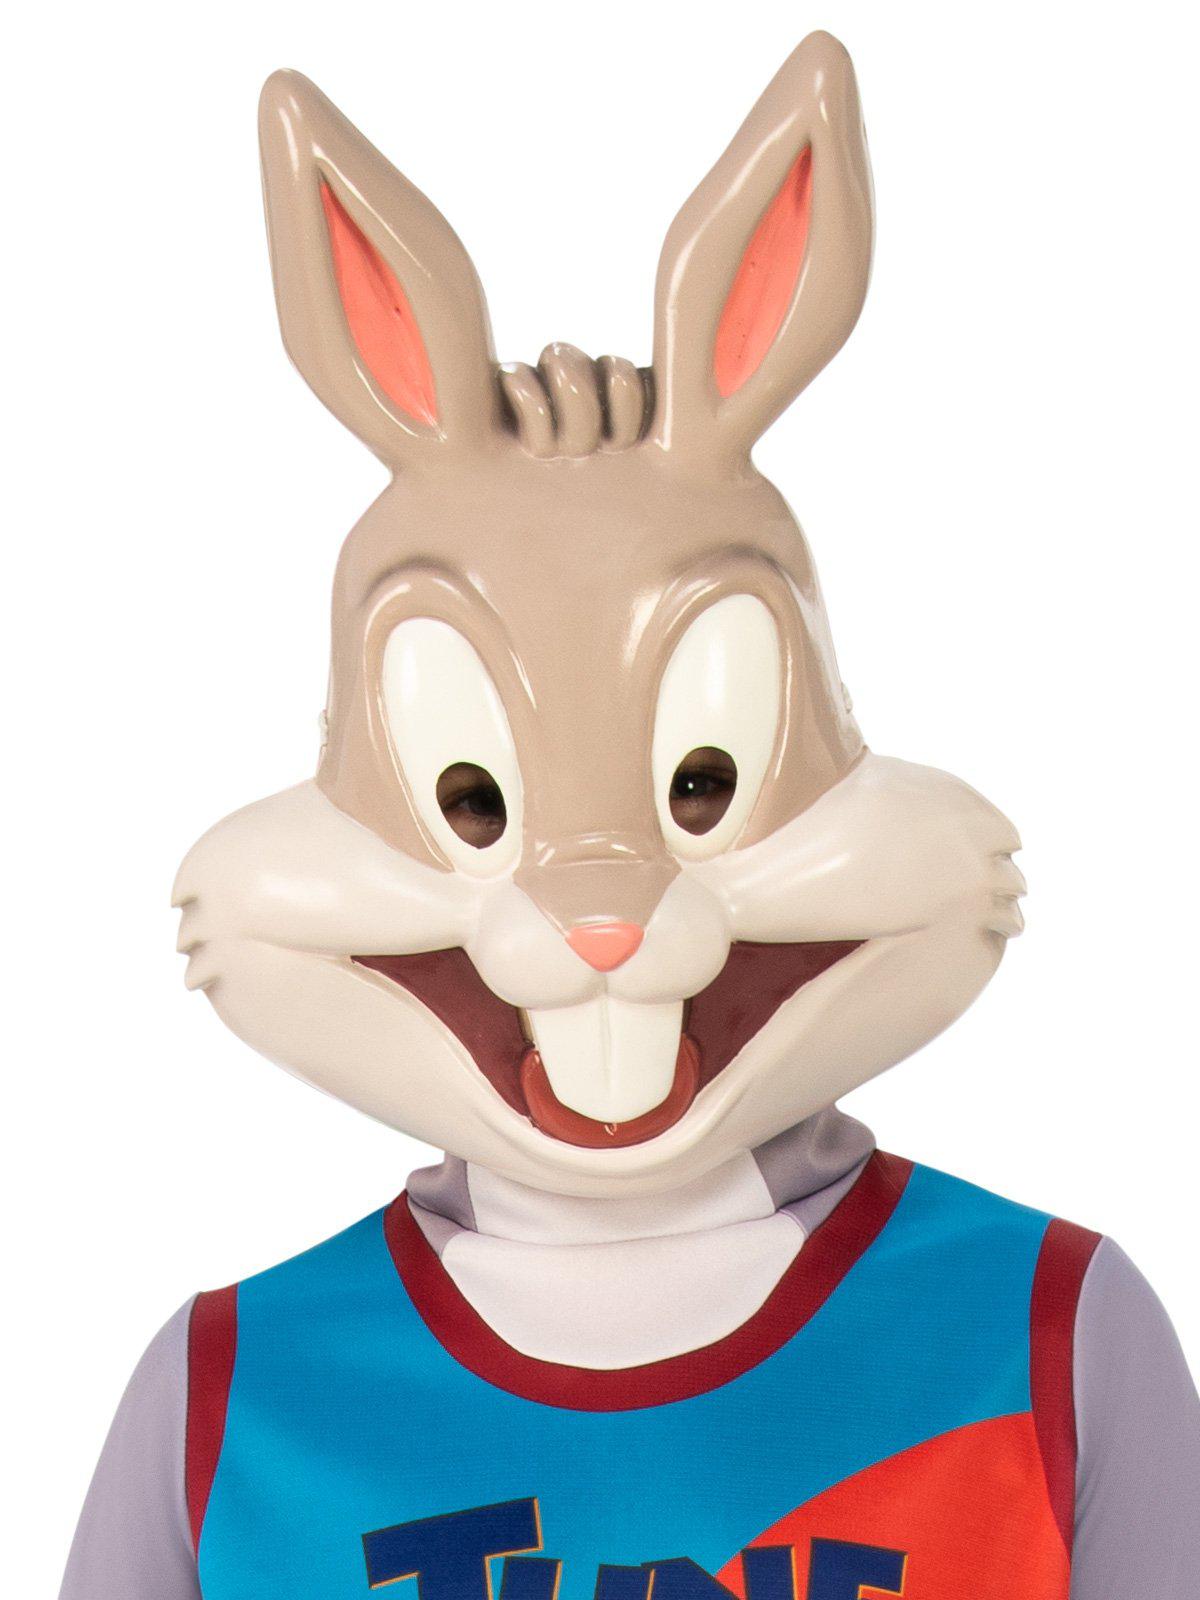 Bugs Bunny Basketball Star